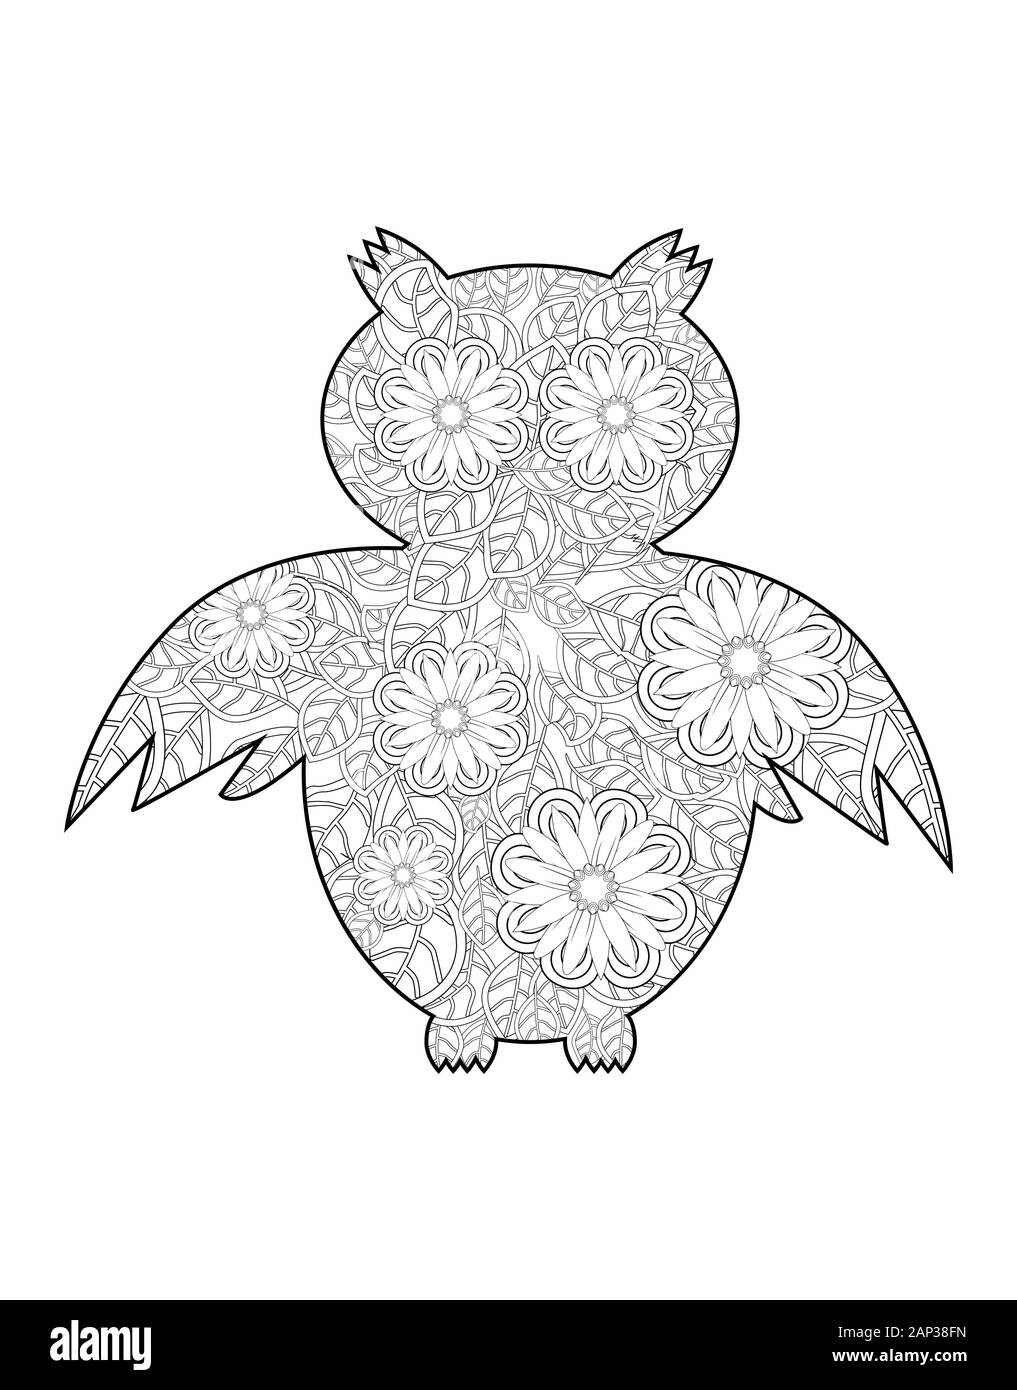 Owl ornementales, zentangled ethniques mascot, amulette, masque de oiseau, animal à motifs pour des profils anti stress pages à colorier. Illustration de Vecteur